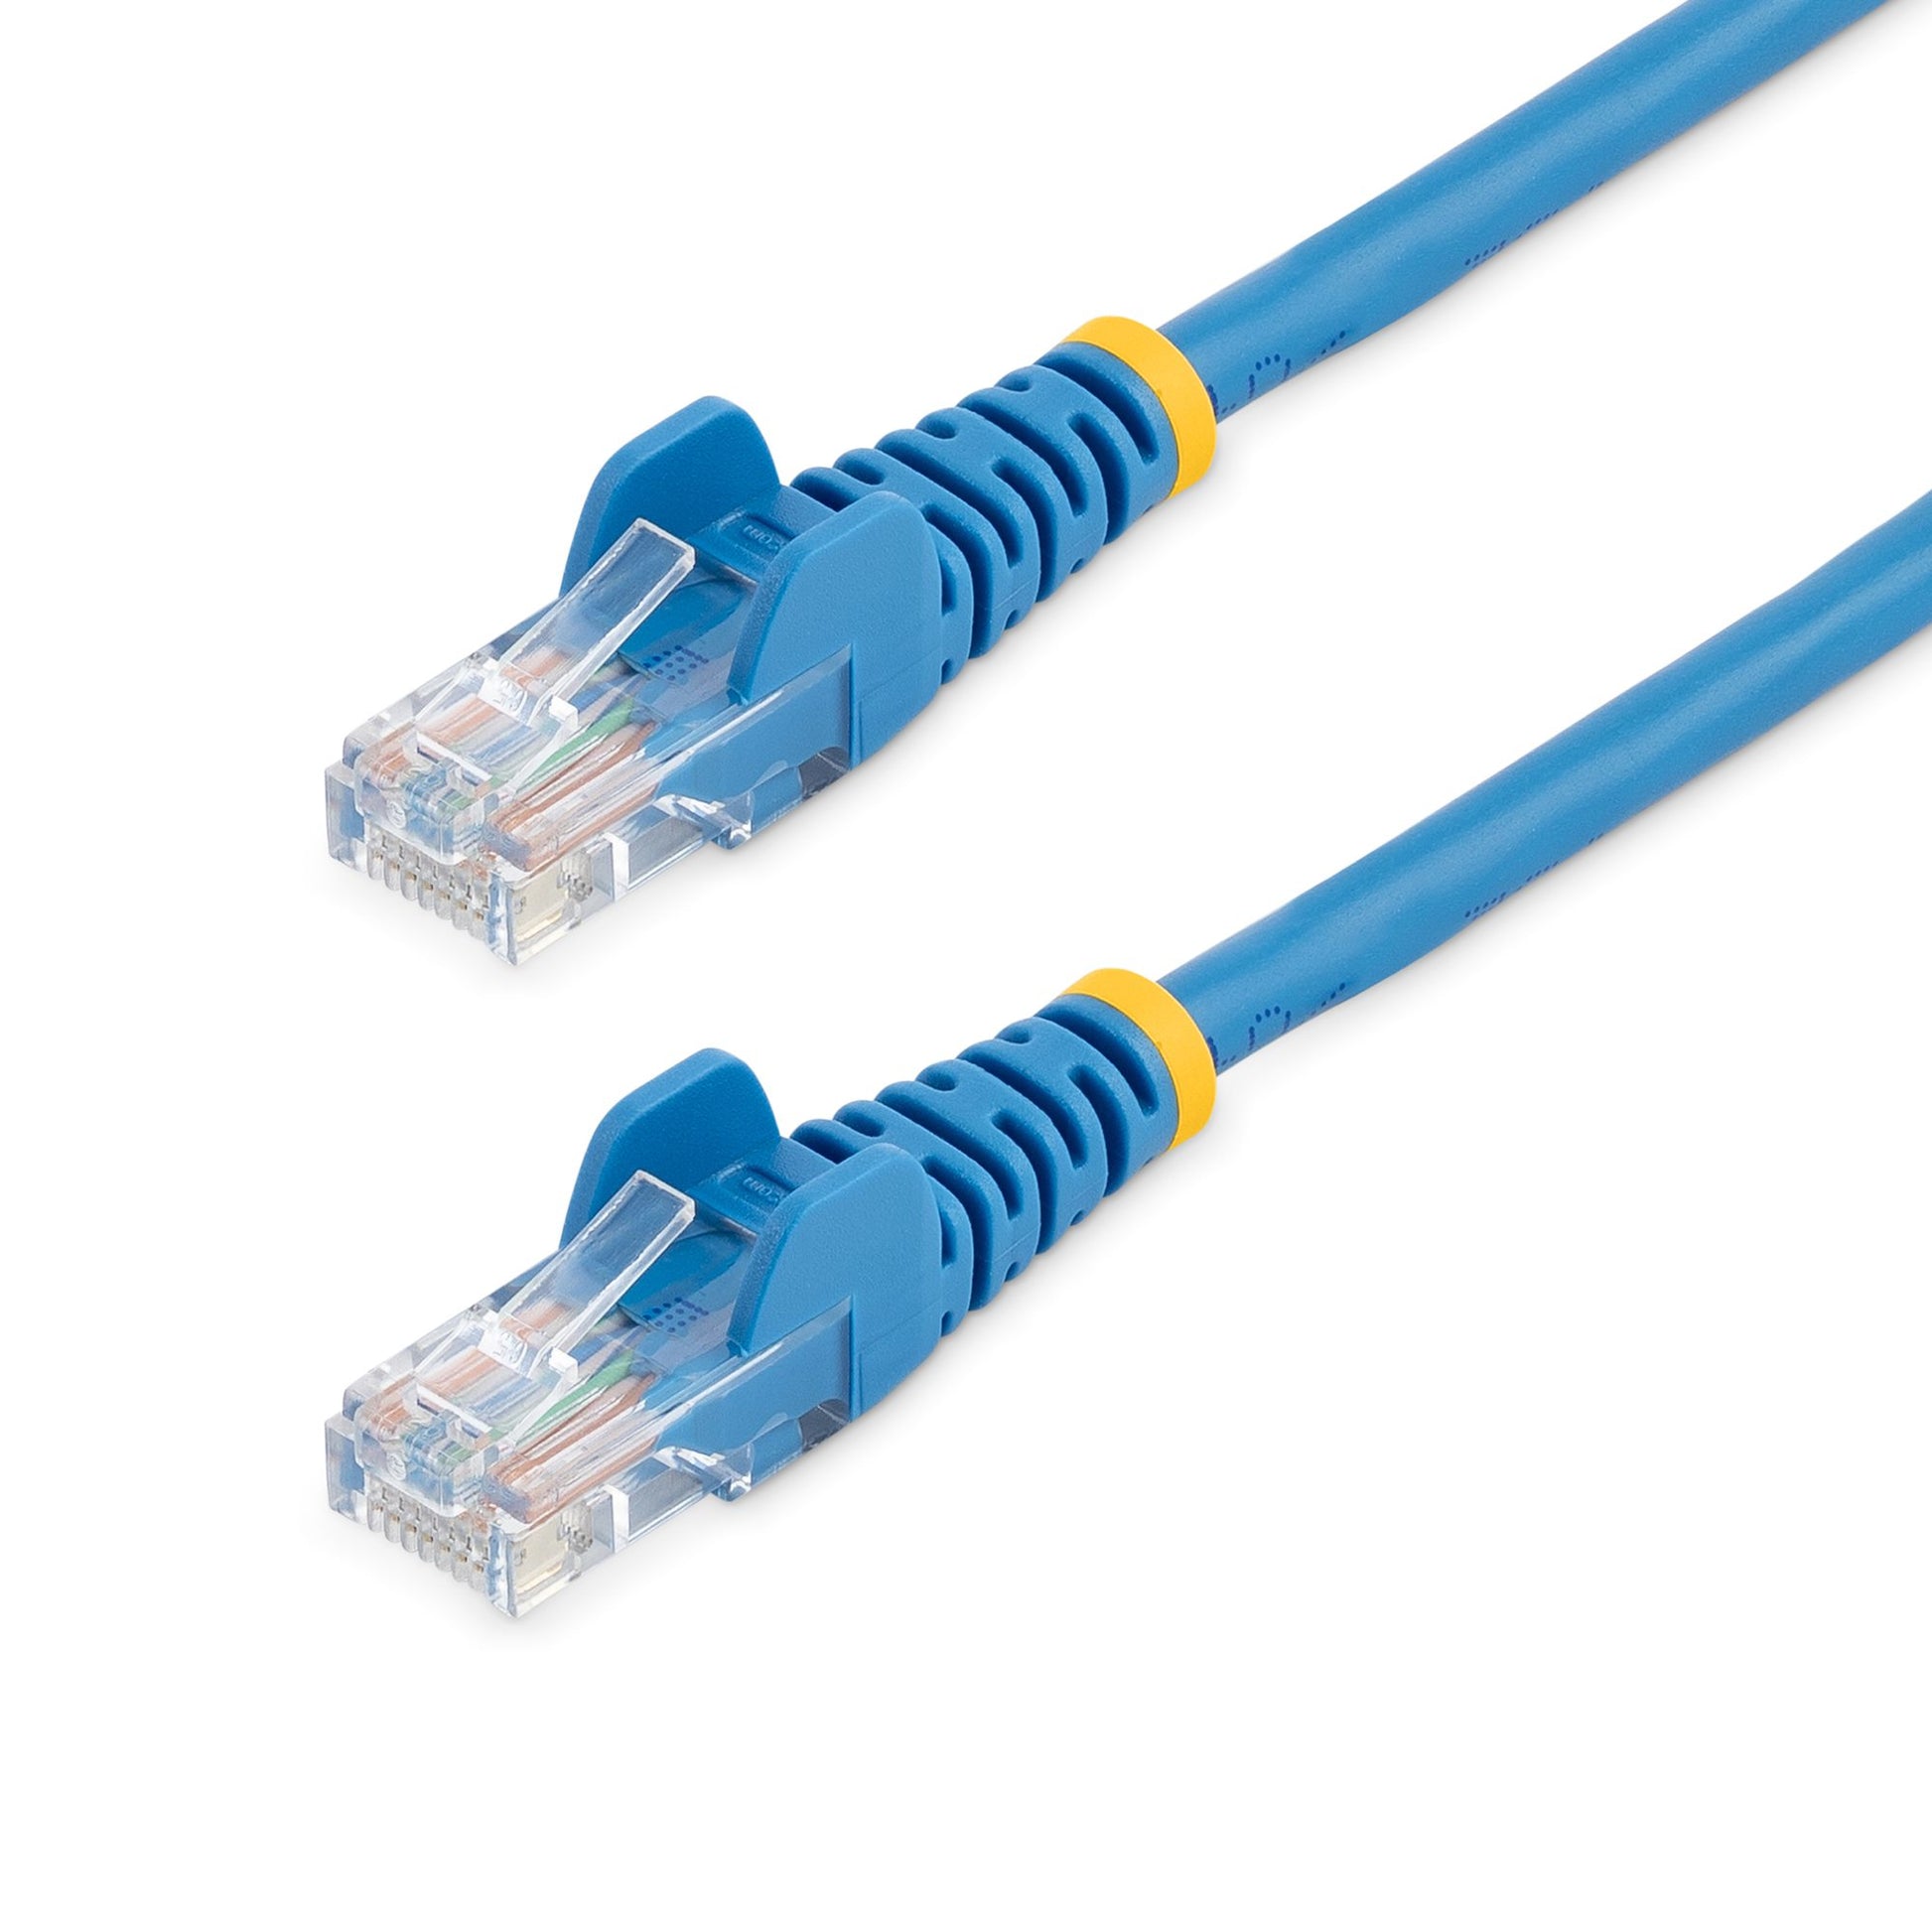 StarTech.com Cat5e Patch Cable with Snagless RJ45 Connectors - 3m, Blue-0